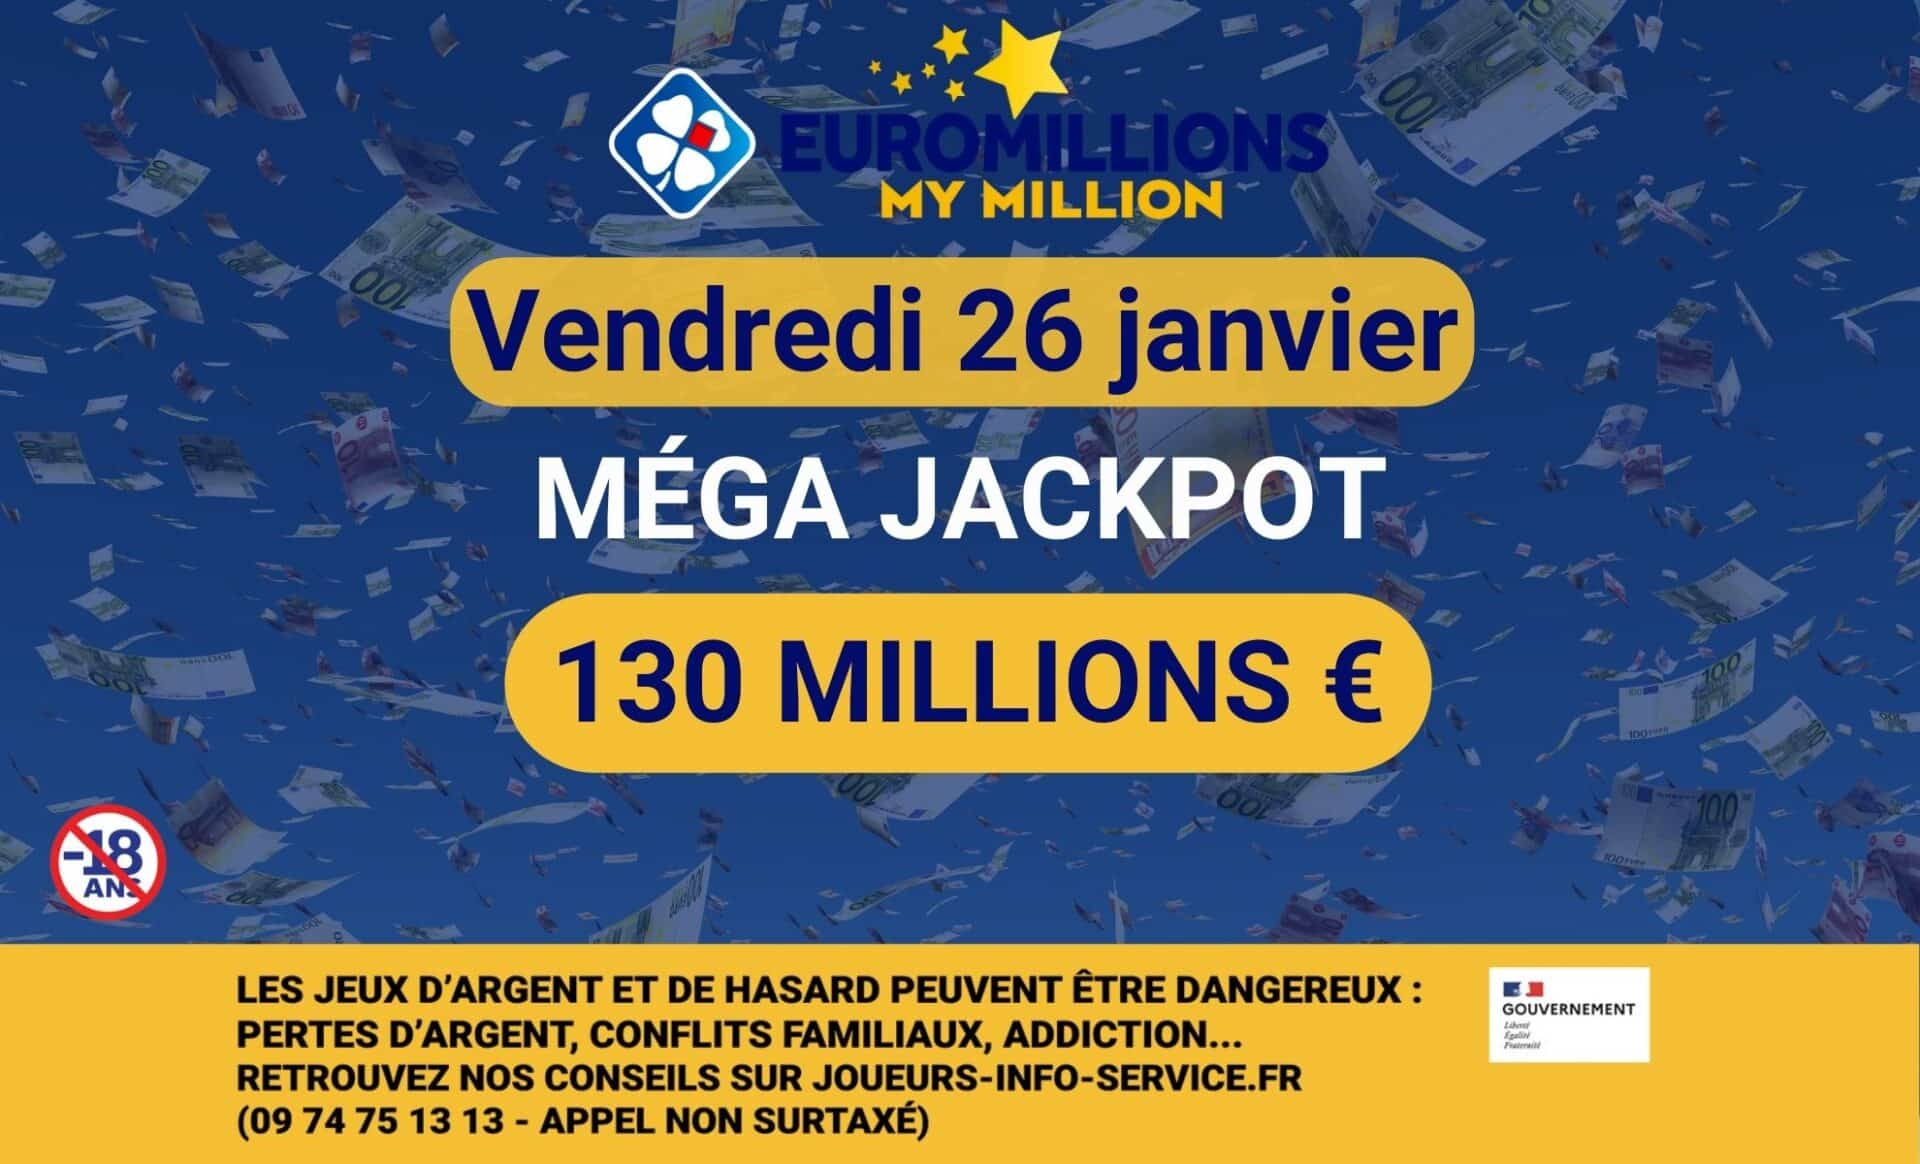 Résultats EuroMillions de la FDJ du vendredi 26 janvier : un méga jackpot de 130 millions !